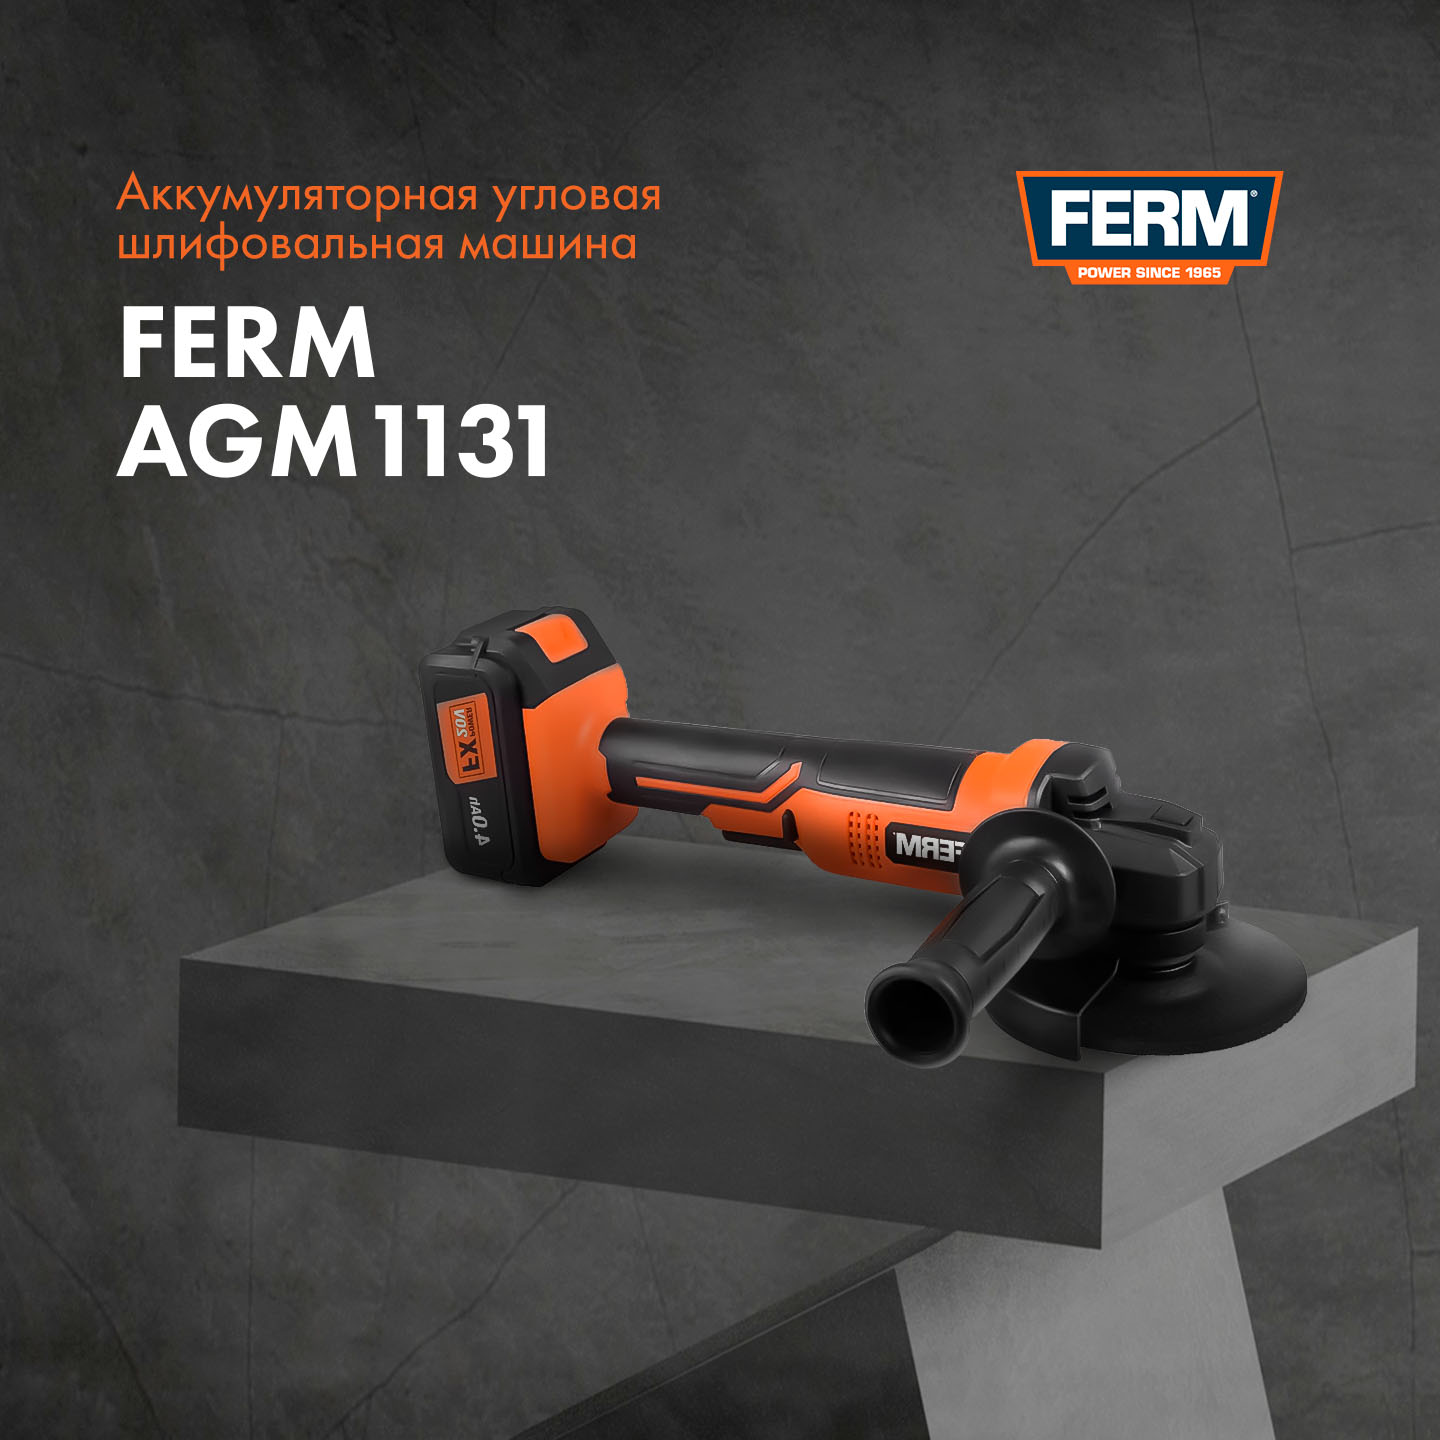 Аккумуляторная угловая шлифмашина FERM AGM1131| Производитель FERM